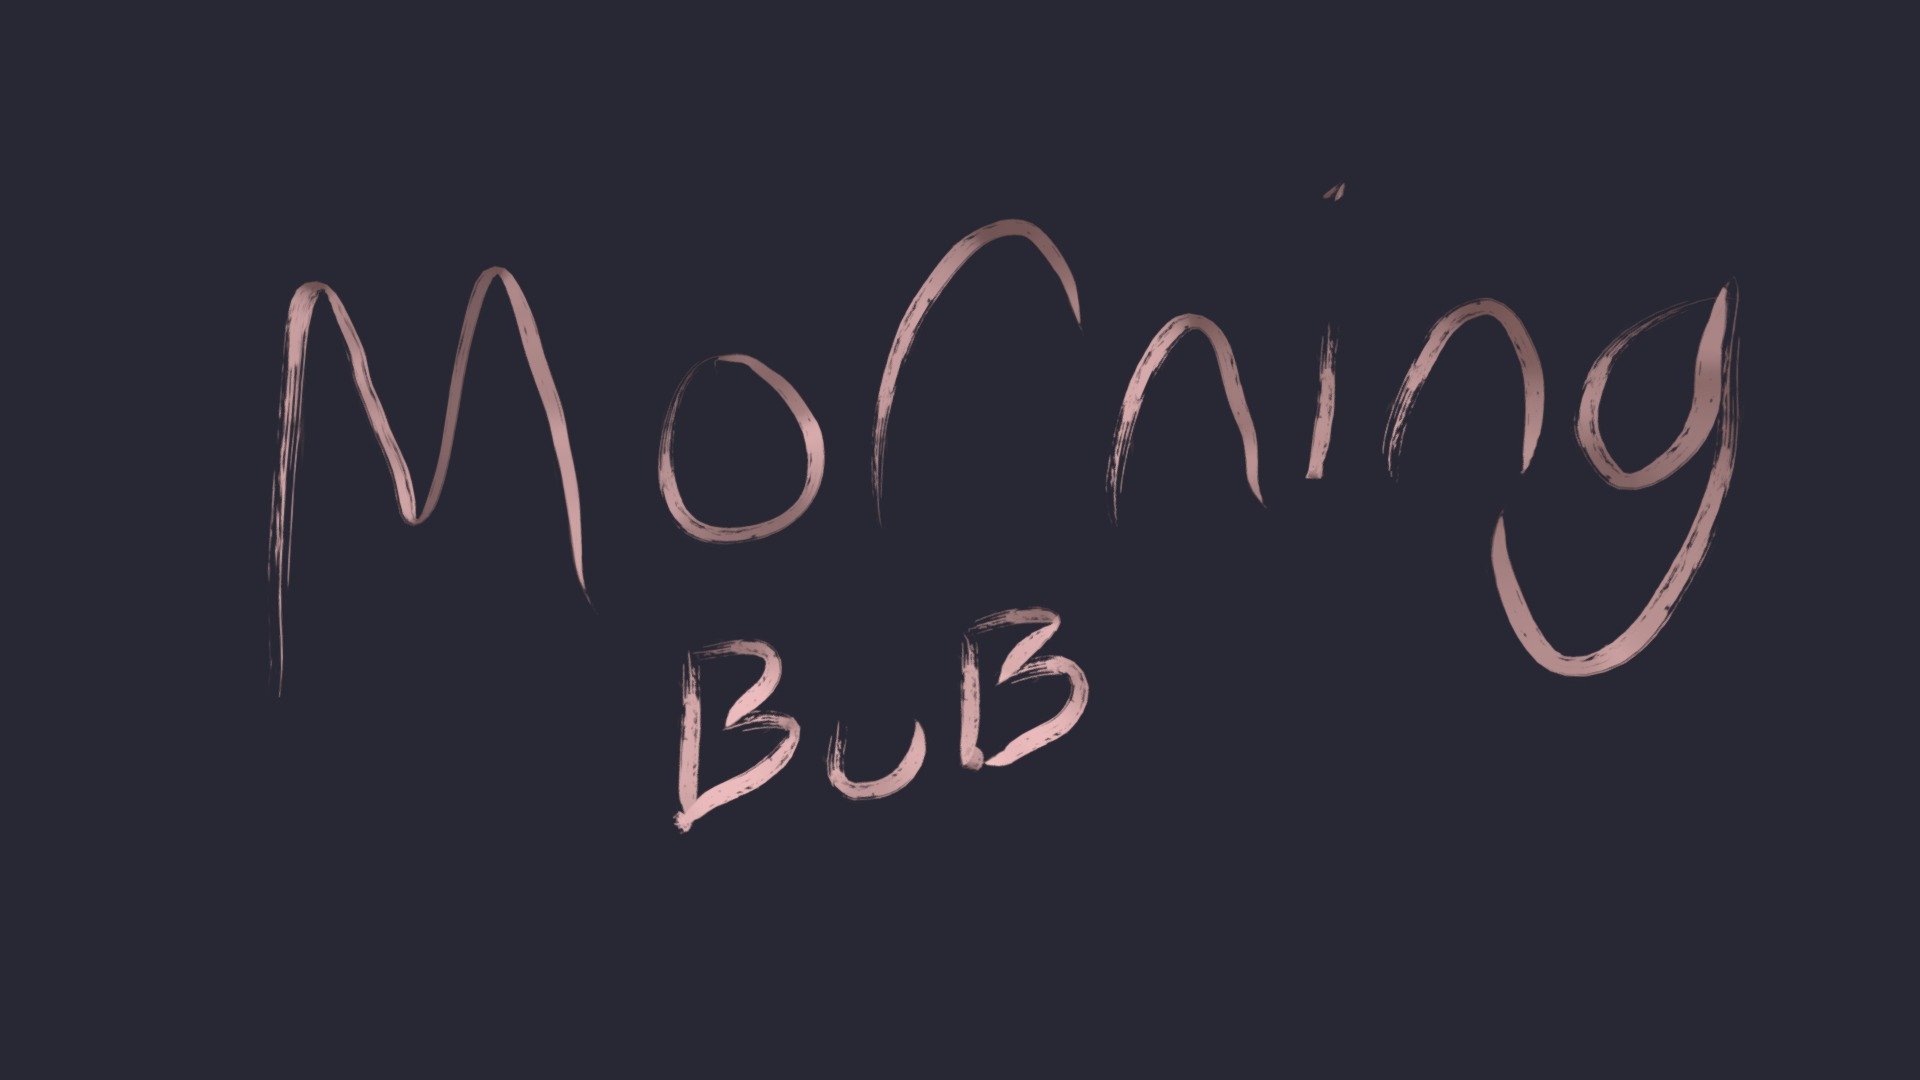 "Morning Bub"